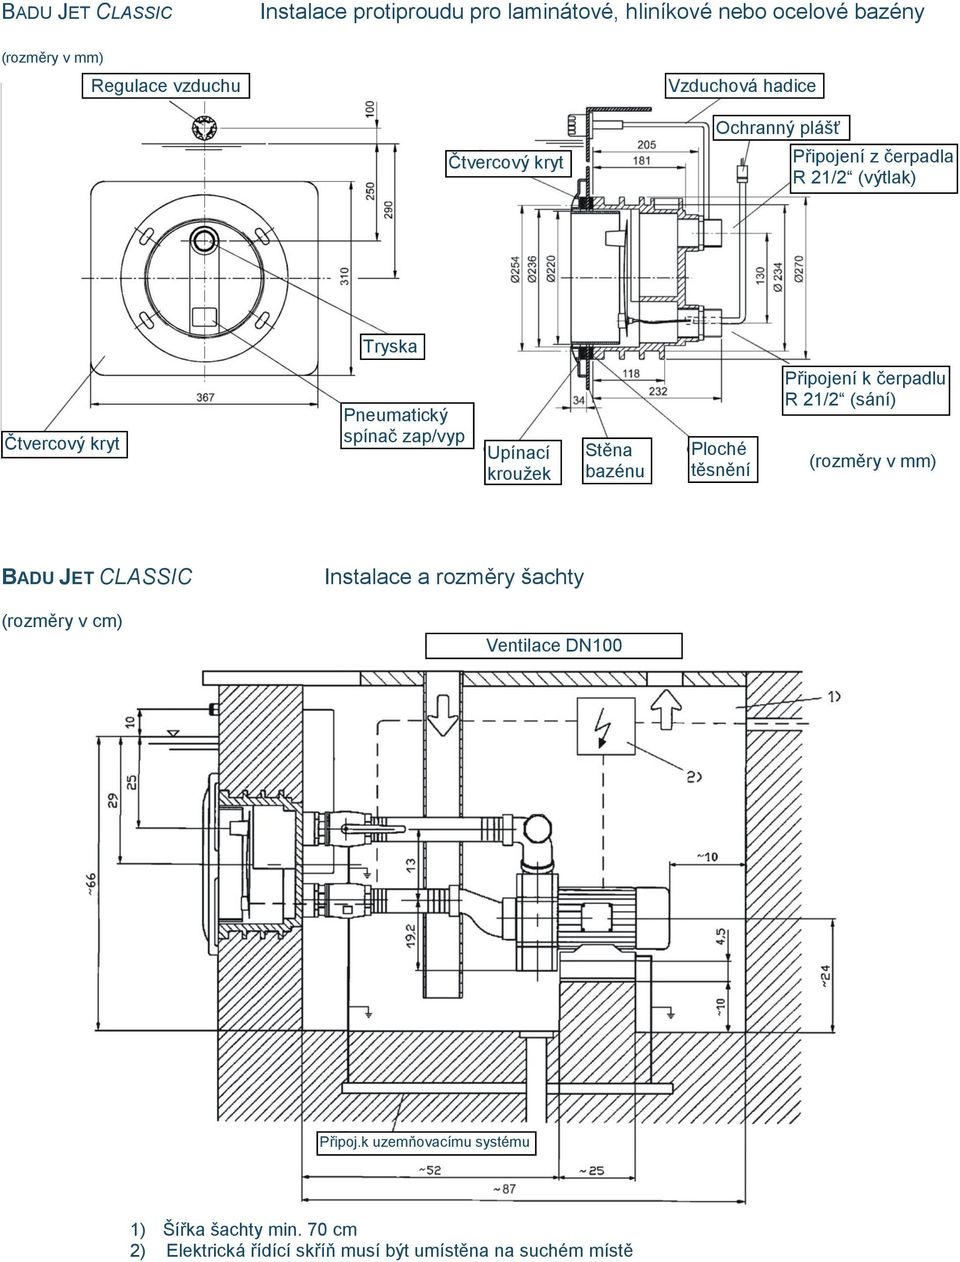 Stěna bazénu Ploché těsnění Připojení k čerpadlu R 21/2 (sání) (rozměry v mm) BADU JET CLASSIC (rozměry v cm) Instalace a rozměry